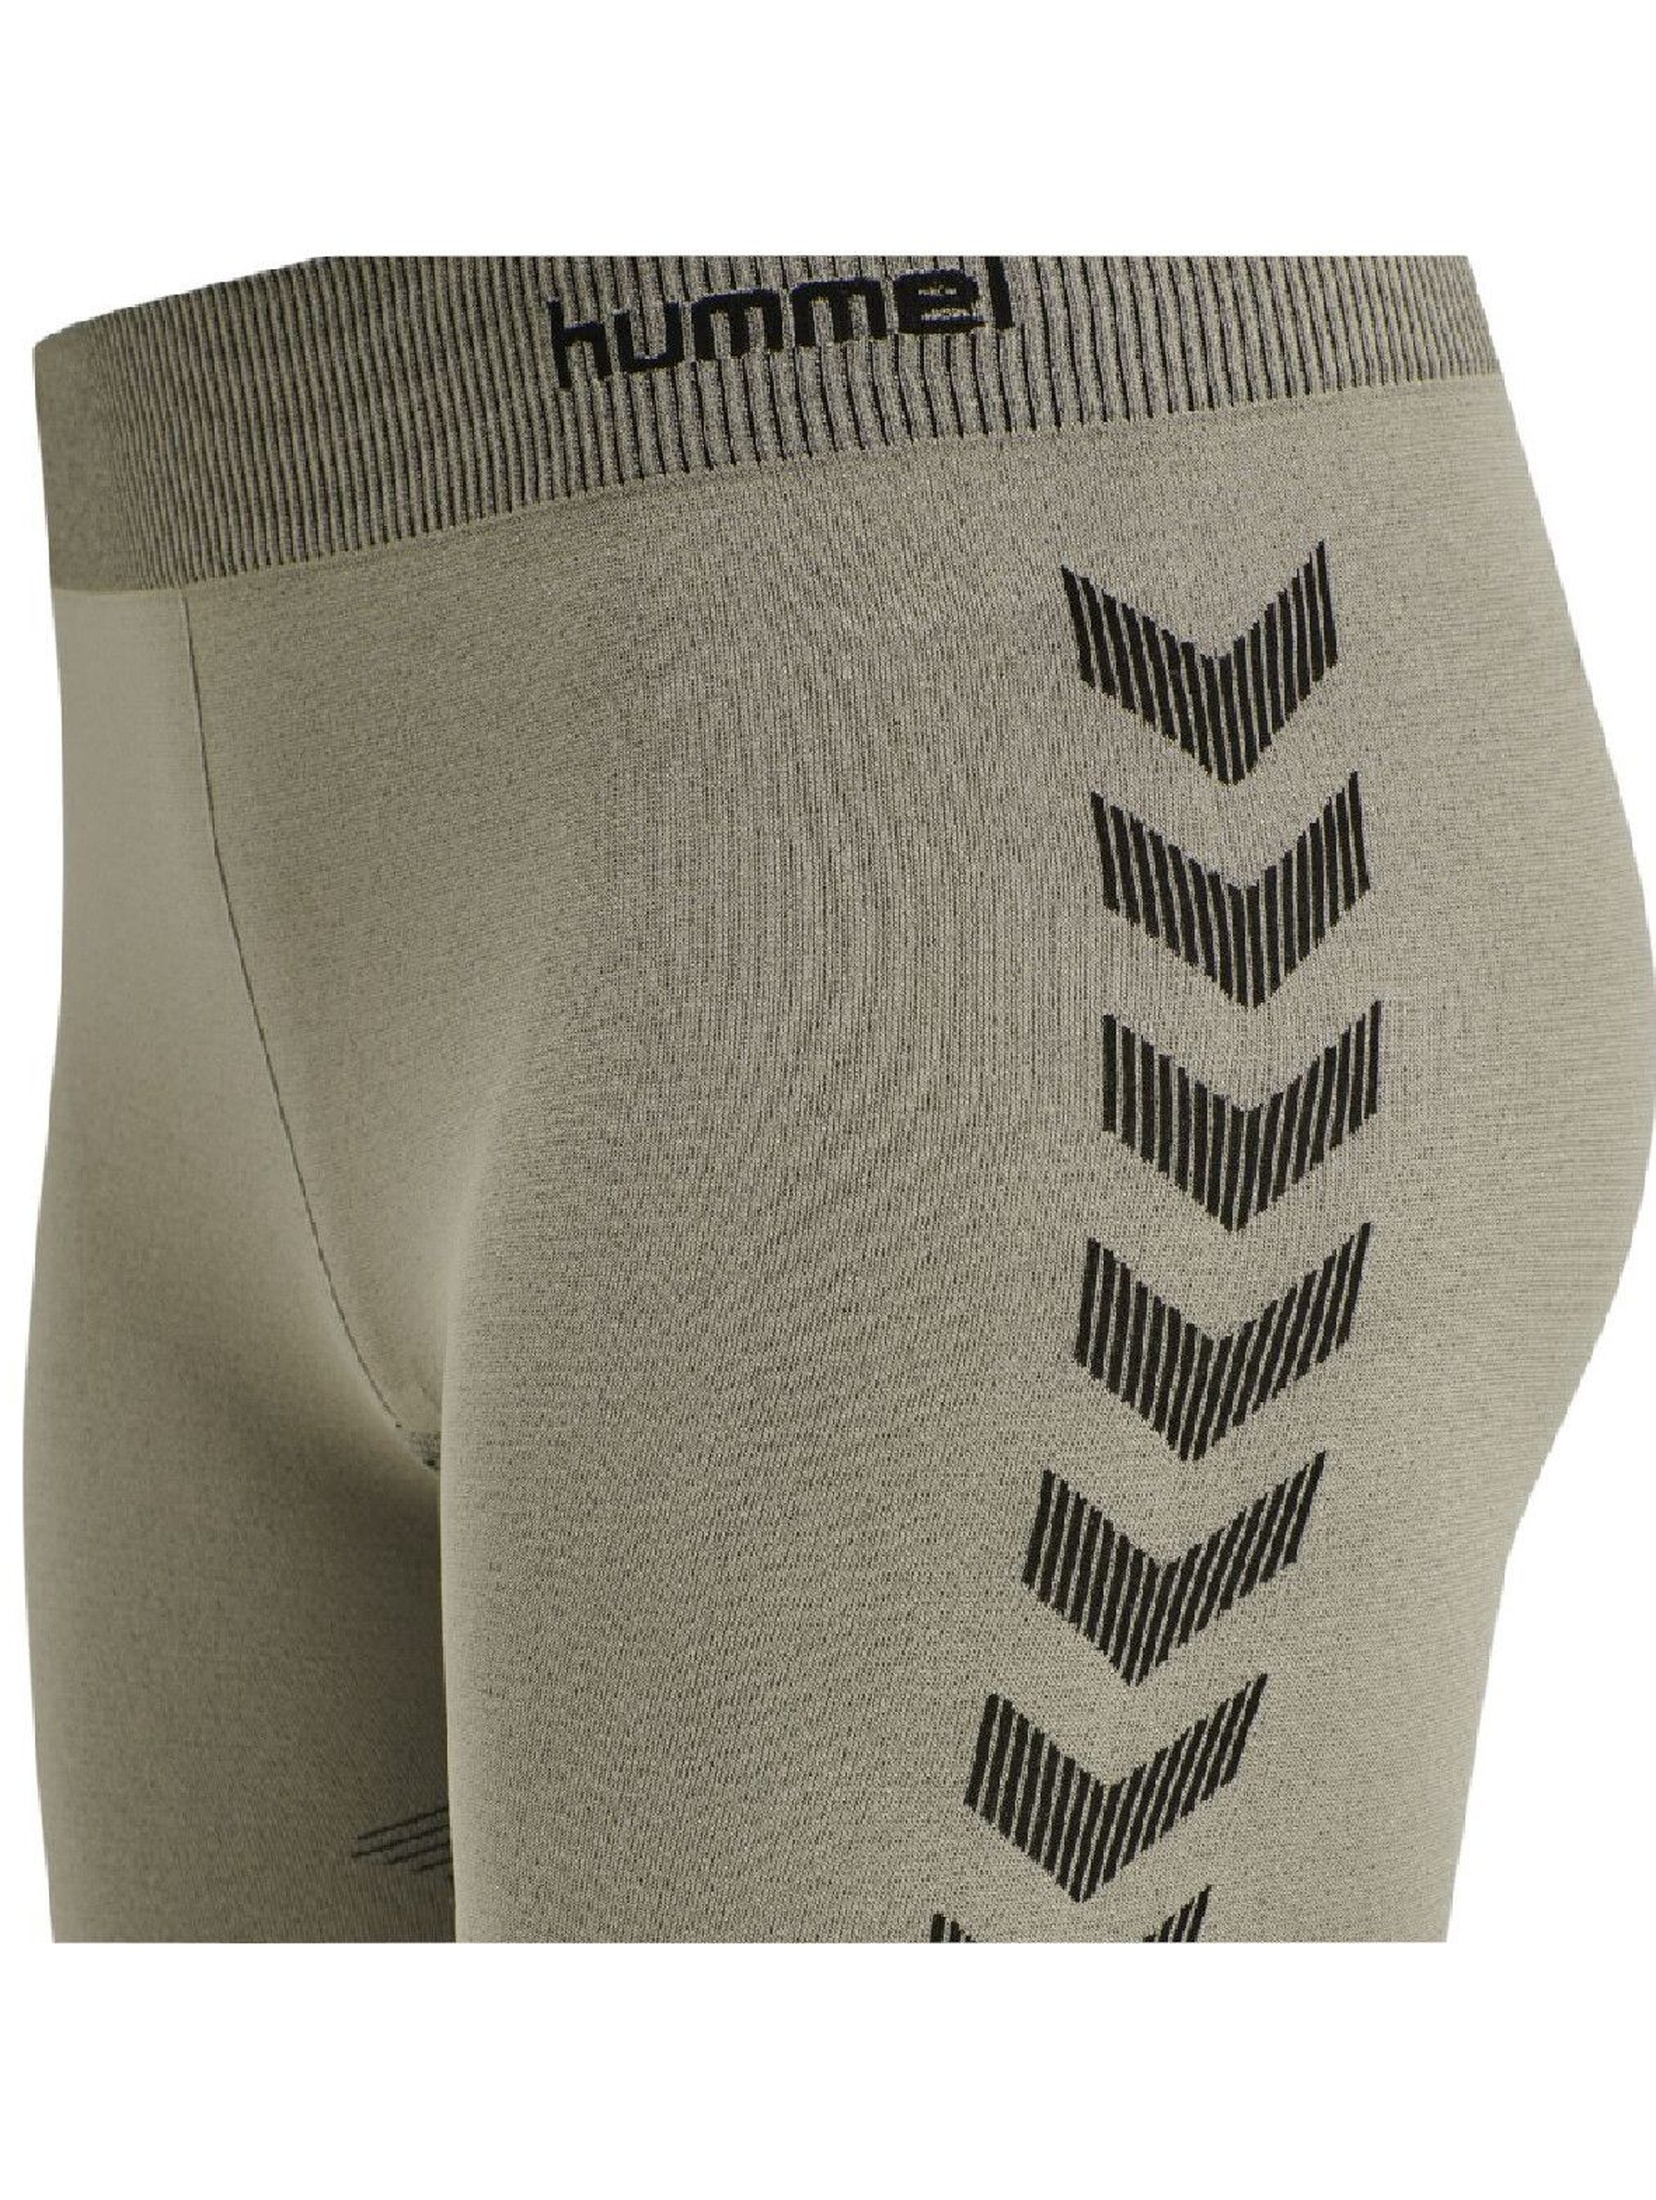 Damskie krótkie legginsy treningowe Hummel